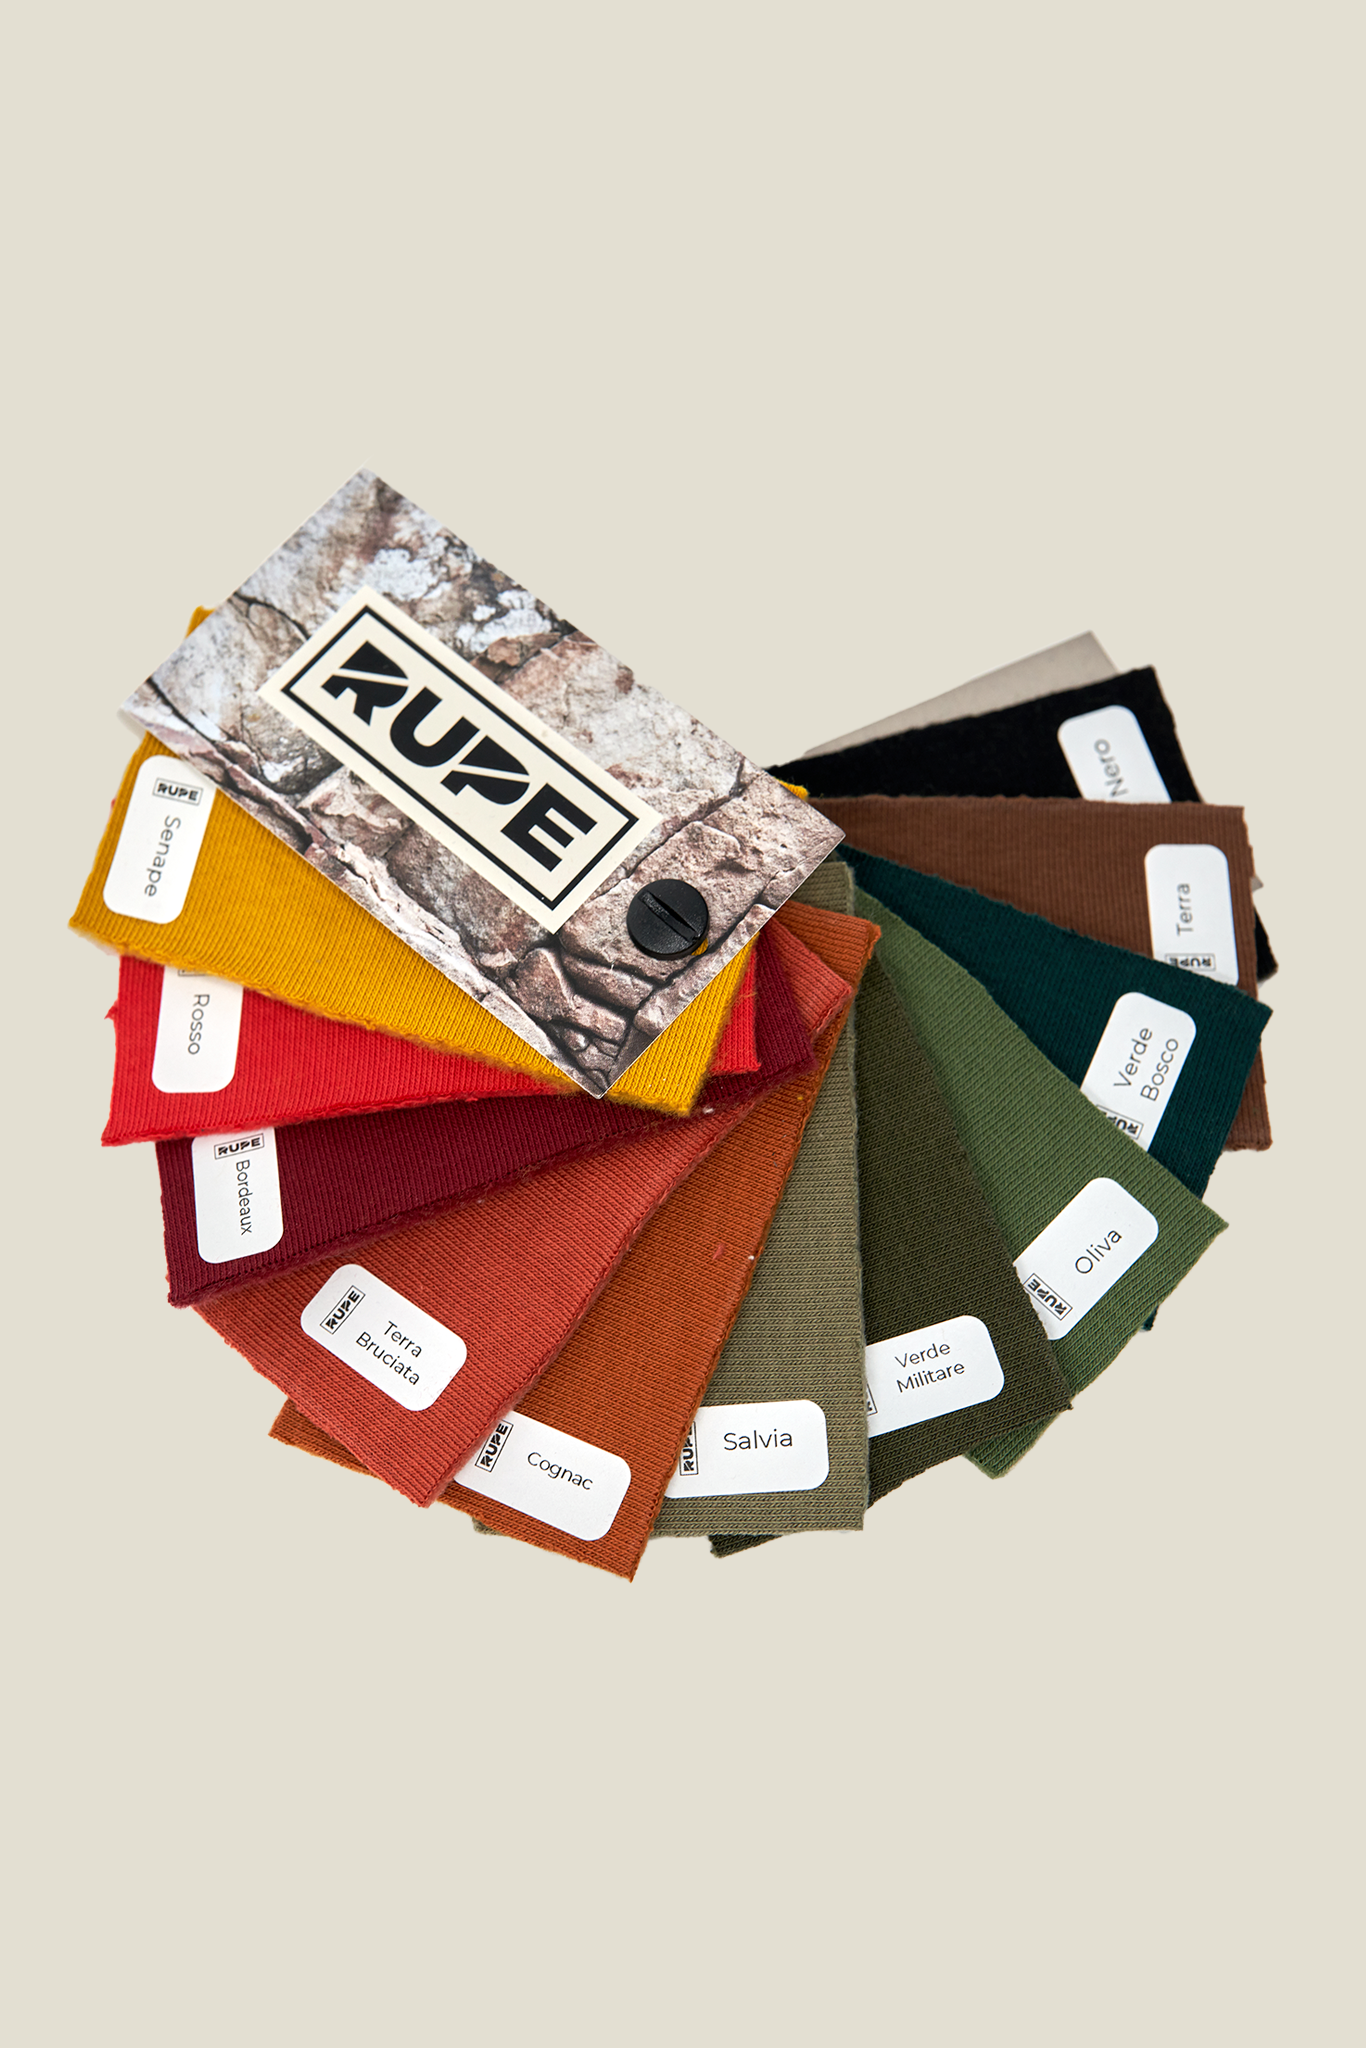 Rupe Gift Box - Custom handmade sweatshirt + fabric sample box